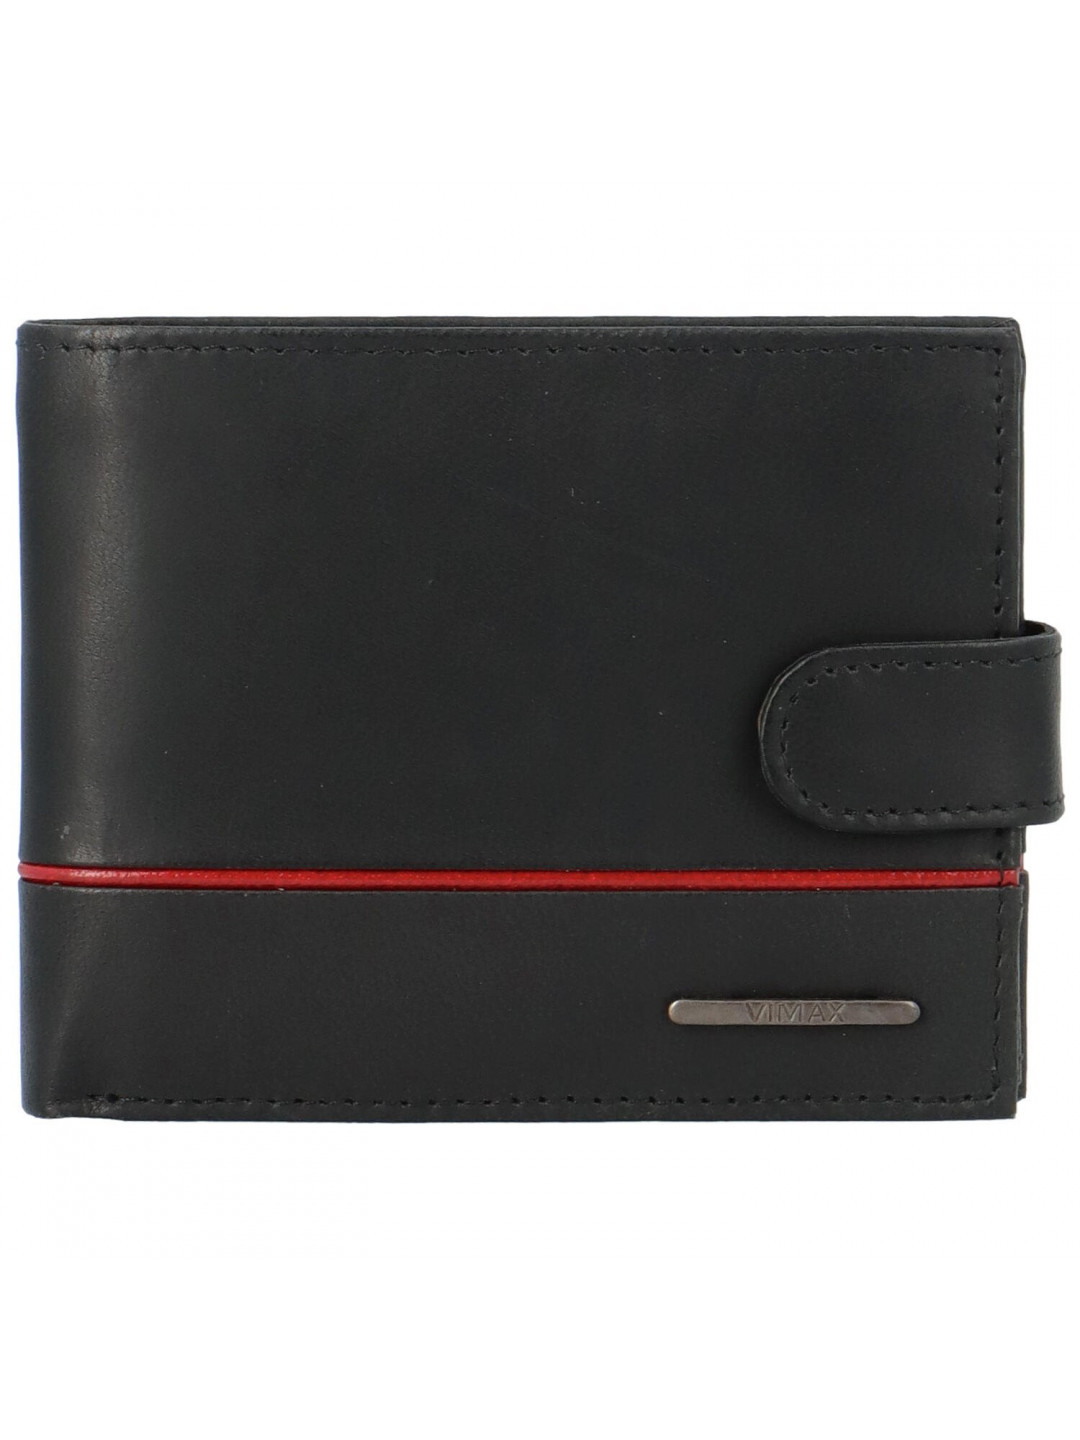 Pánská kožená peněženka na šířku Vimax Wyatar černo červená